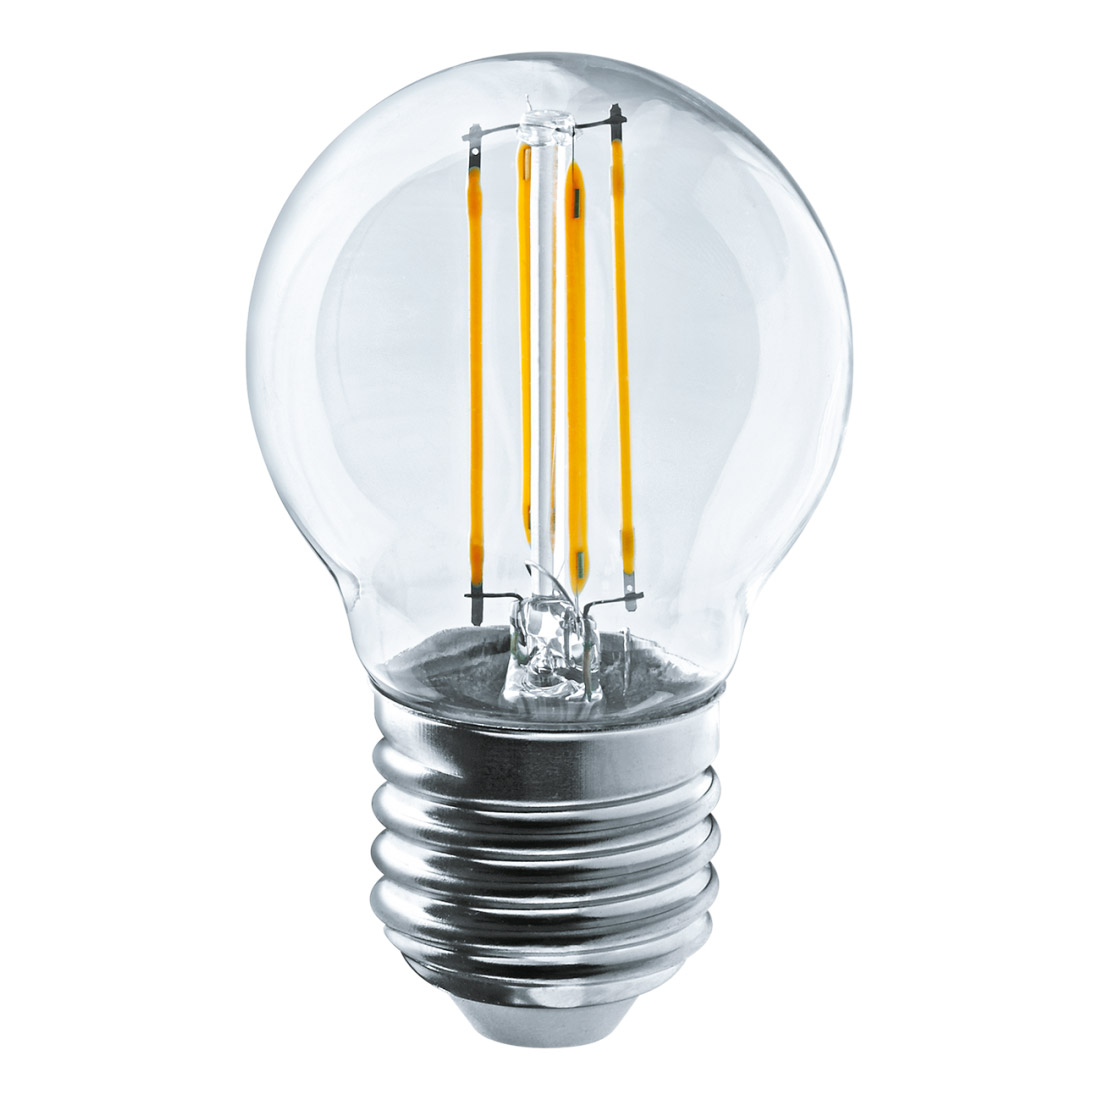 Лампа filament шарик 4вт e27 холодная Navigator 61343 лампа filament груша 8вт e27 холодная navigator 61345